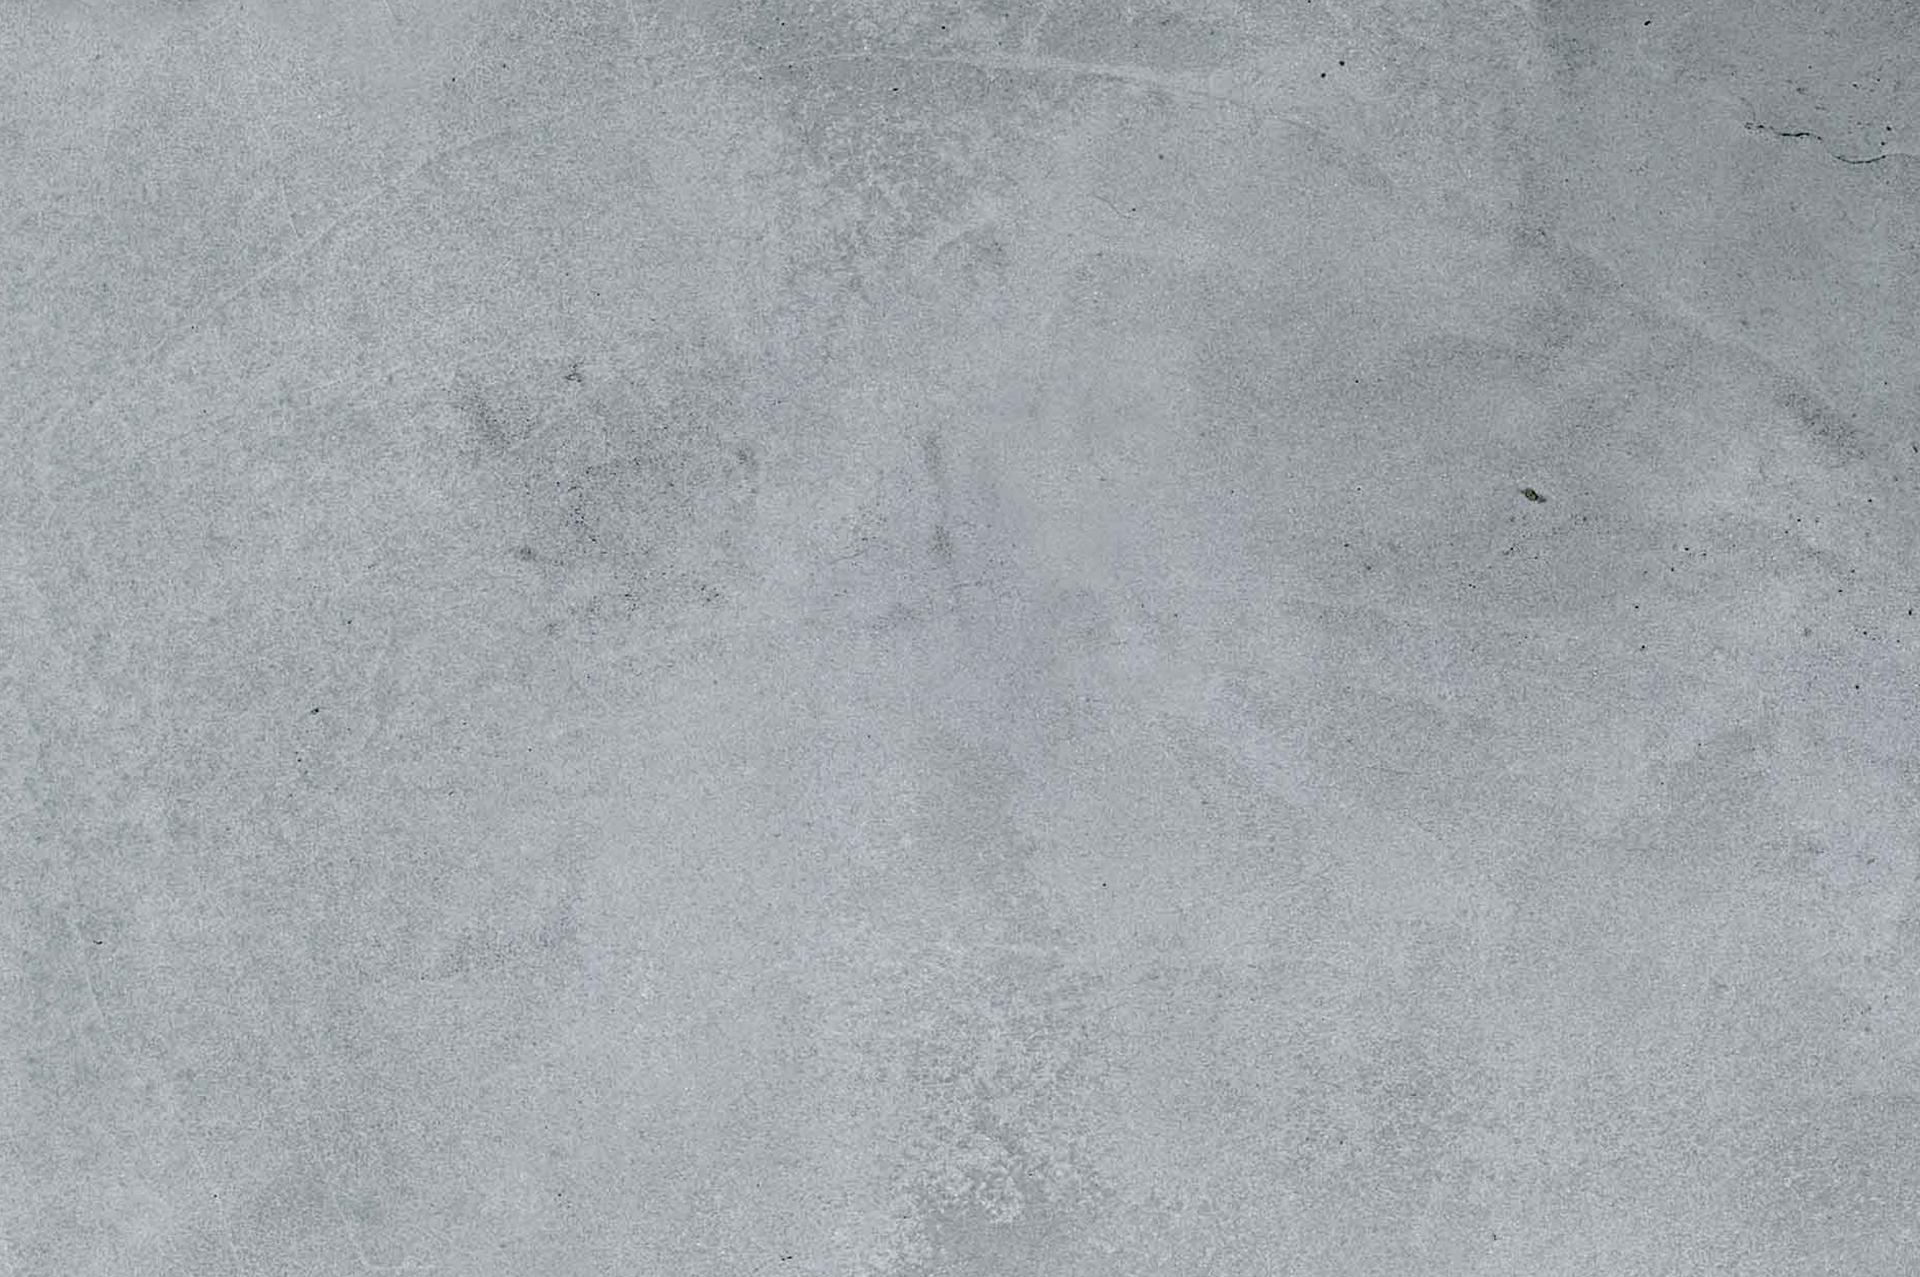 antea-pulizia-pavimenti-cemento